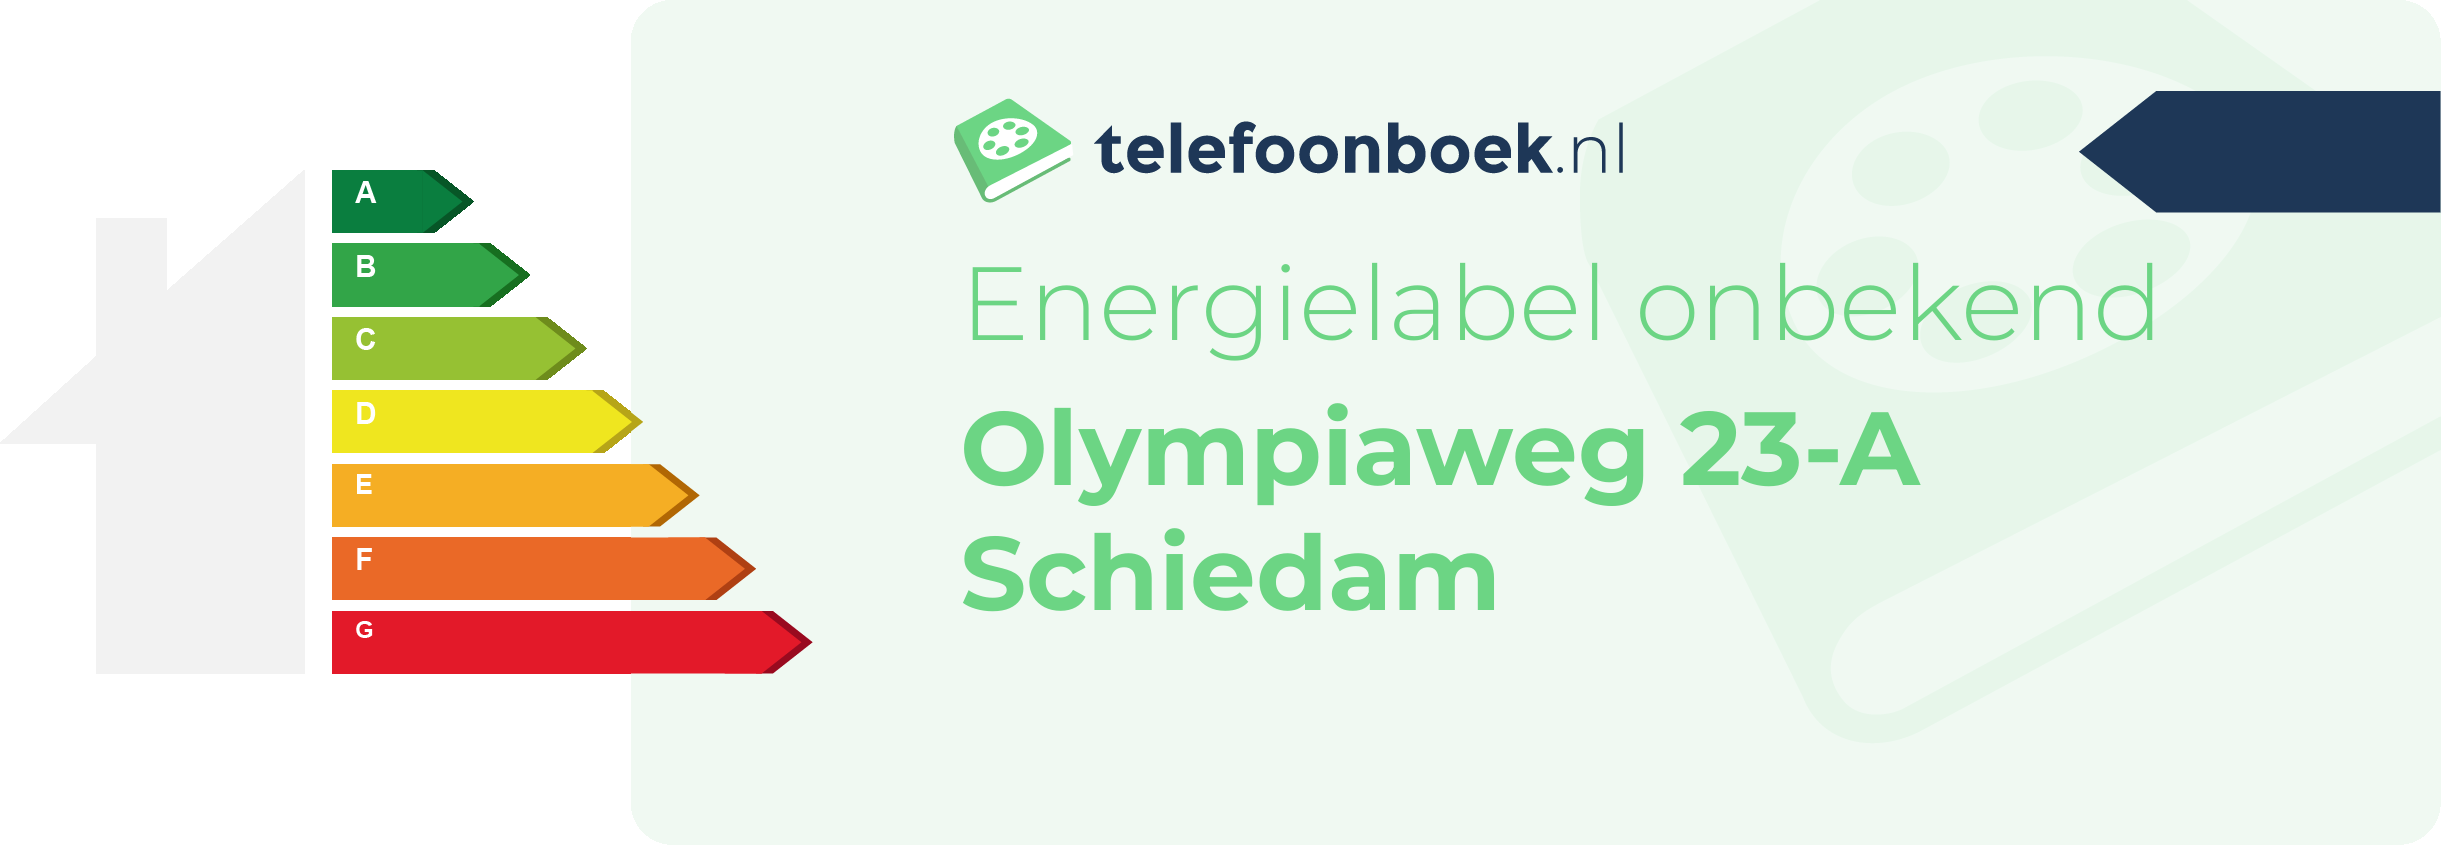 Energielabel Olympiaweg 23-A Schiedam